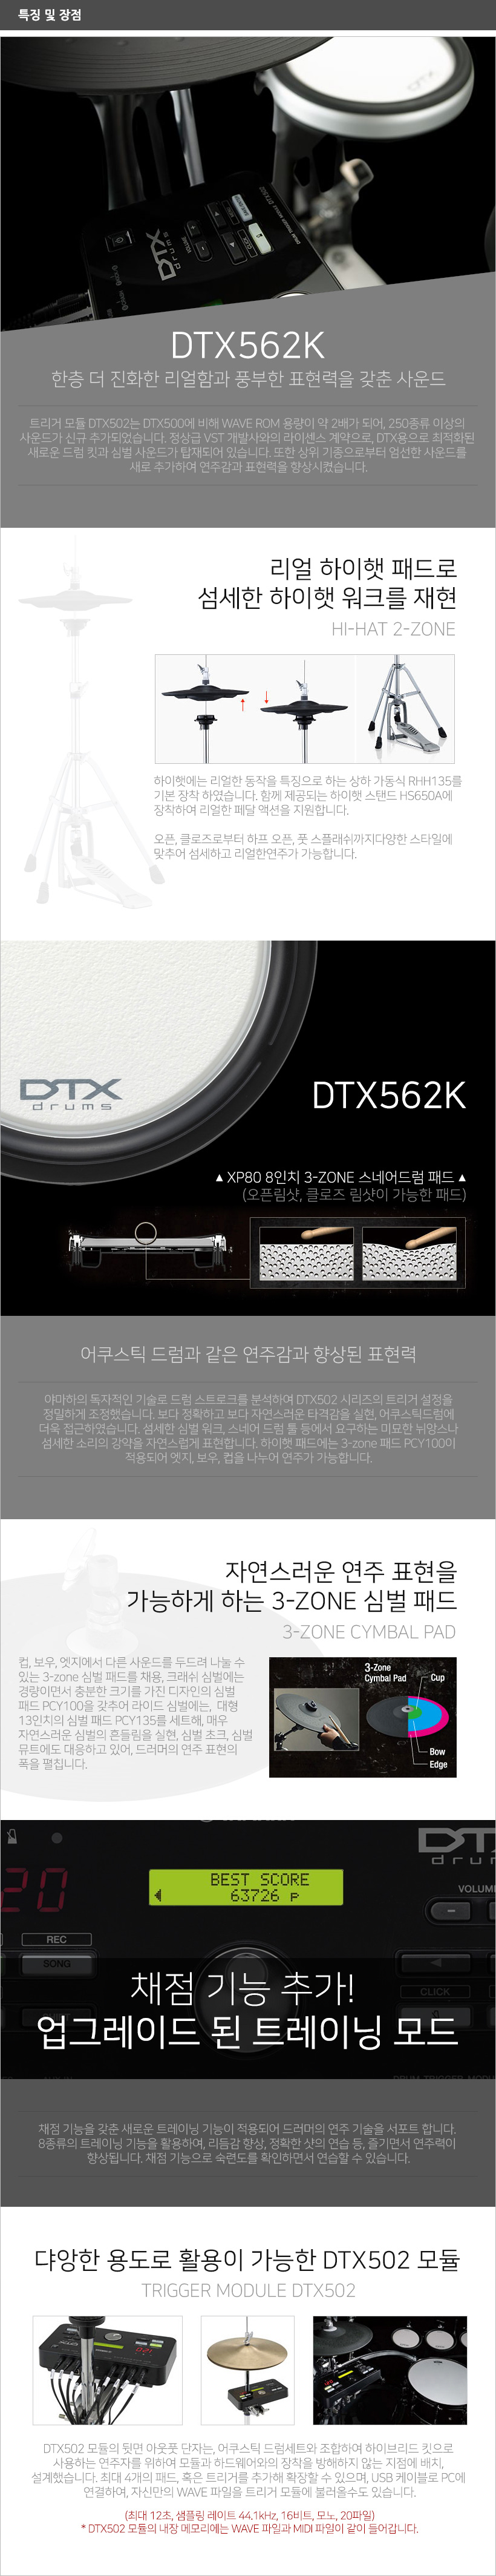 DTX562K 특징 및 장점